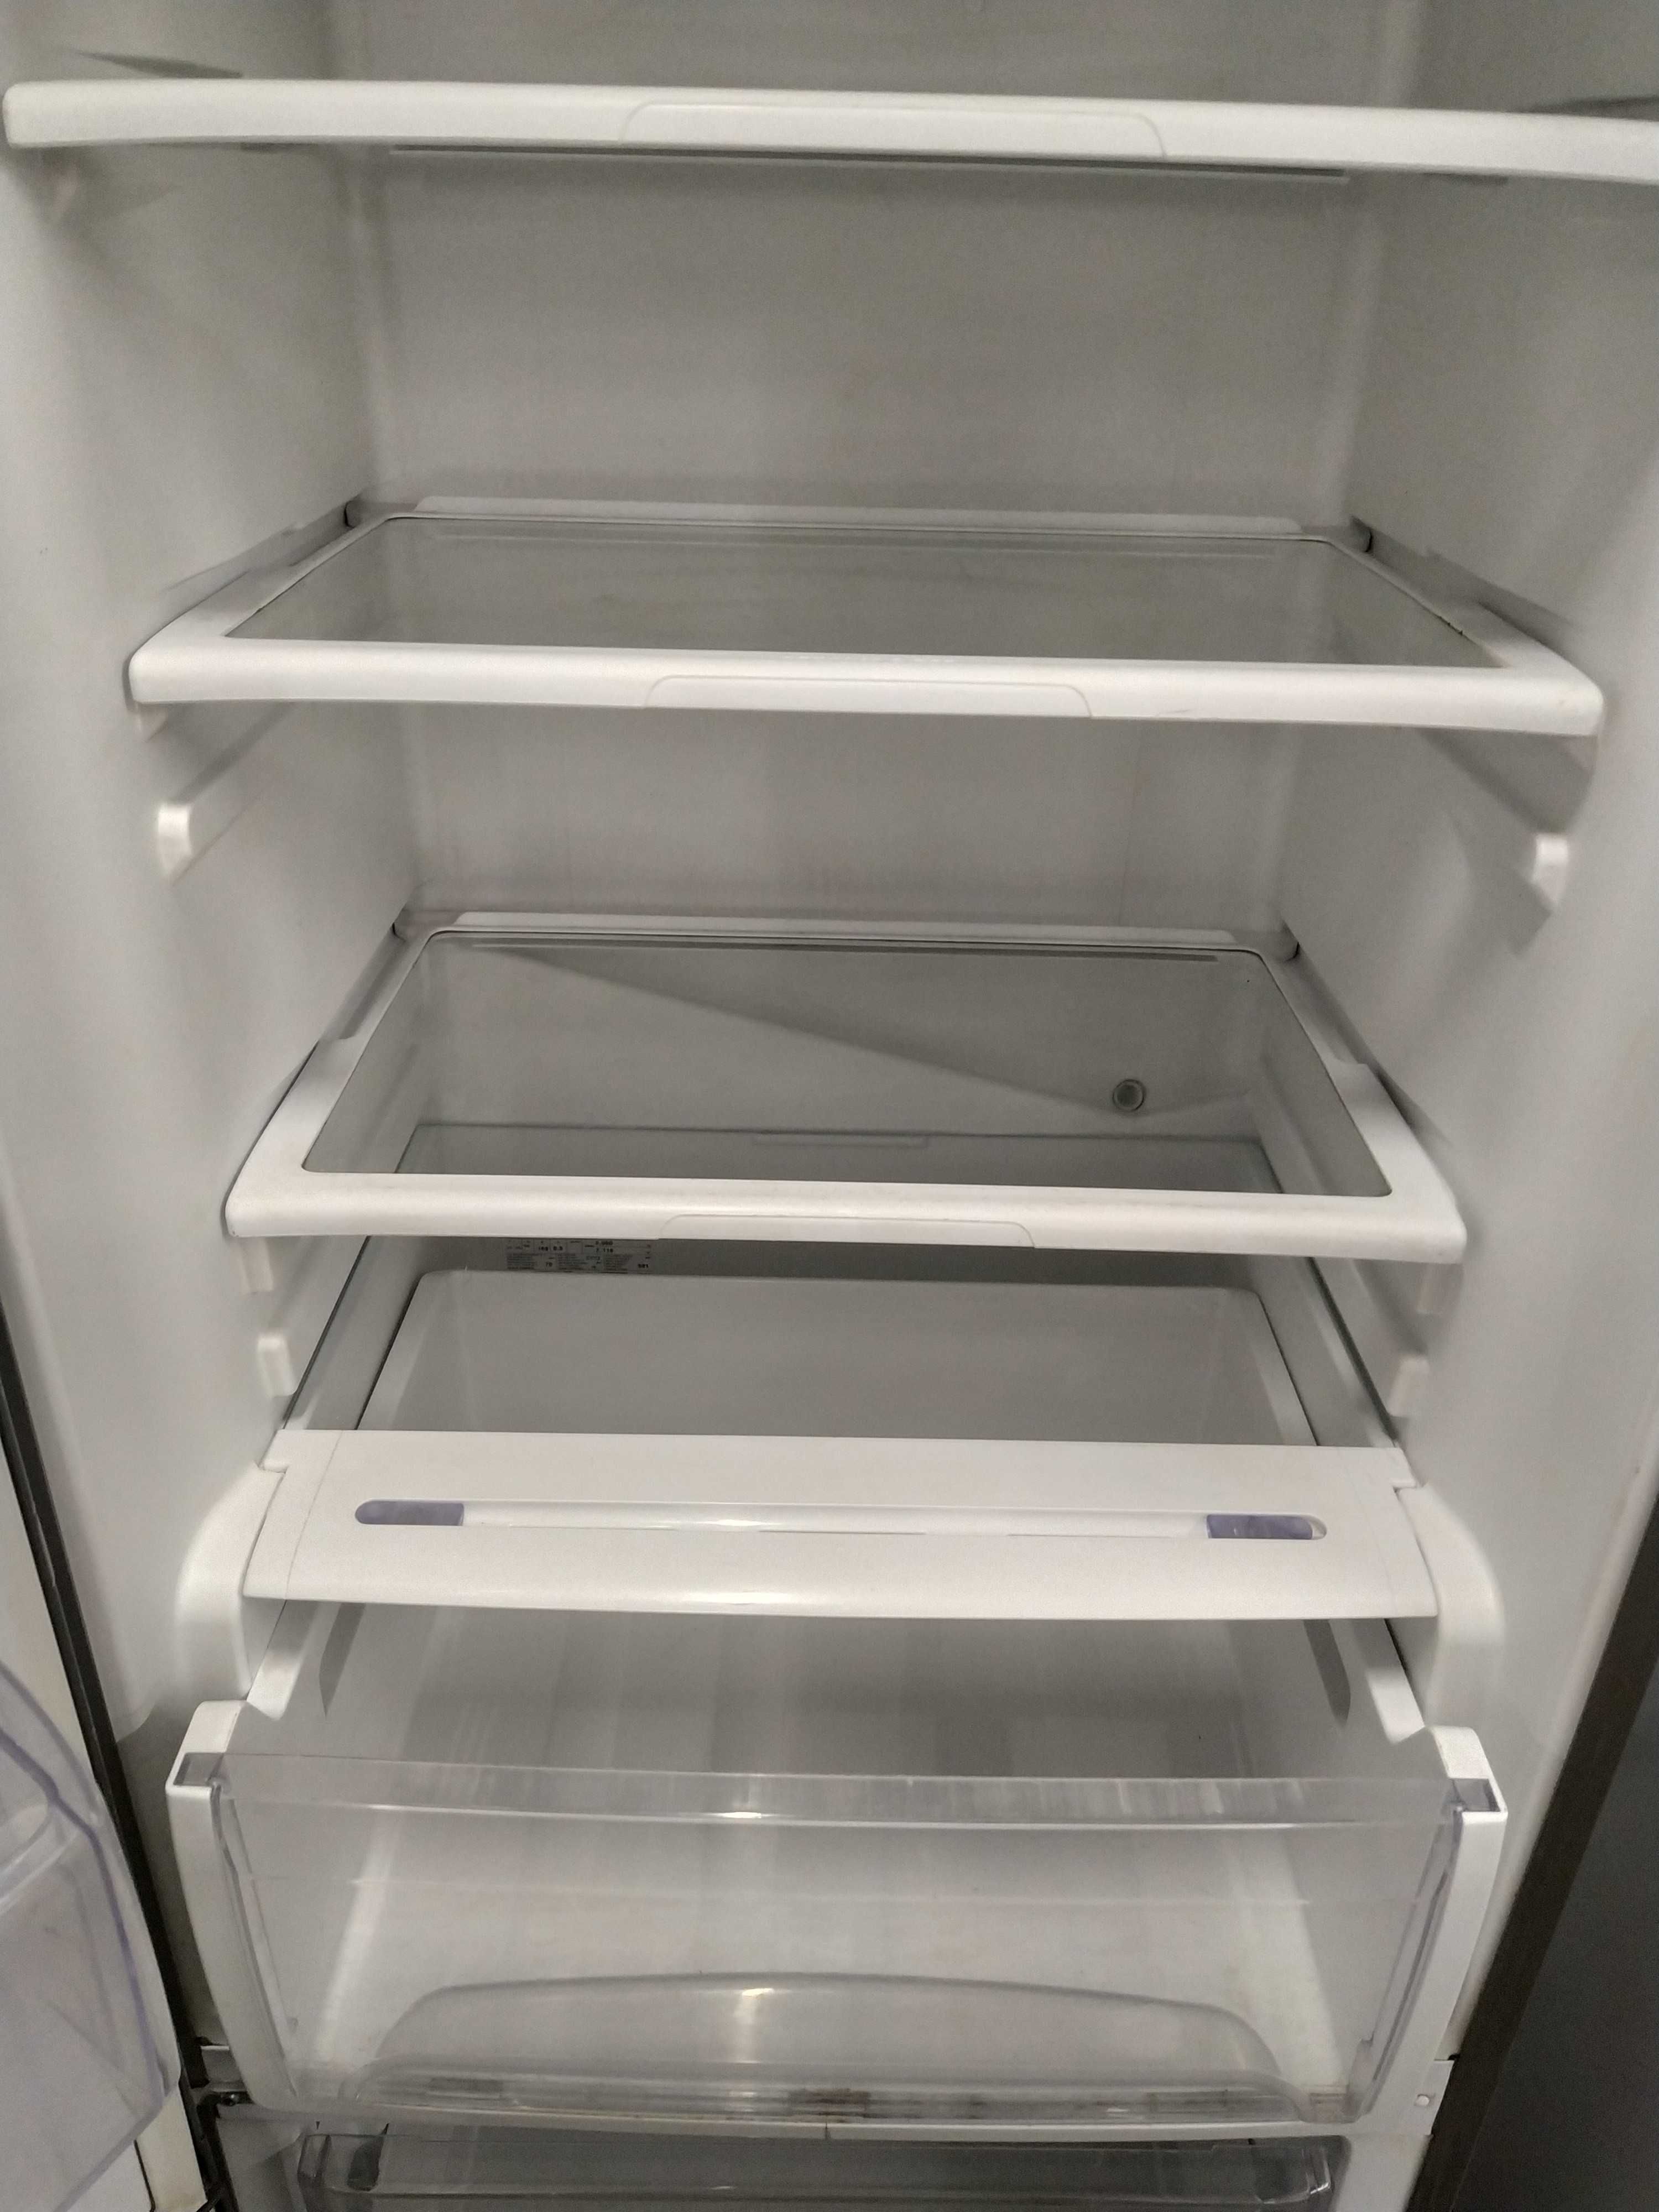 Холодильник б/у Candy CFMEE 3755 (111019). Привезен из Европы